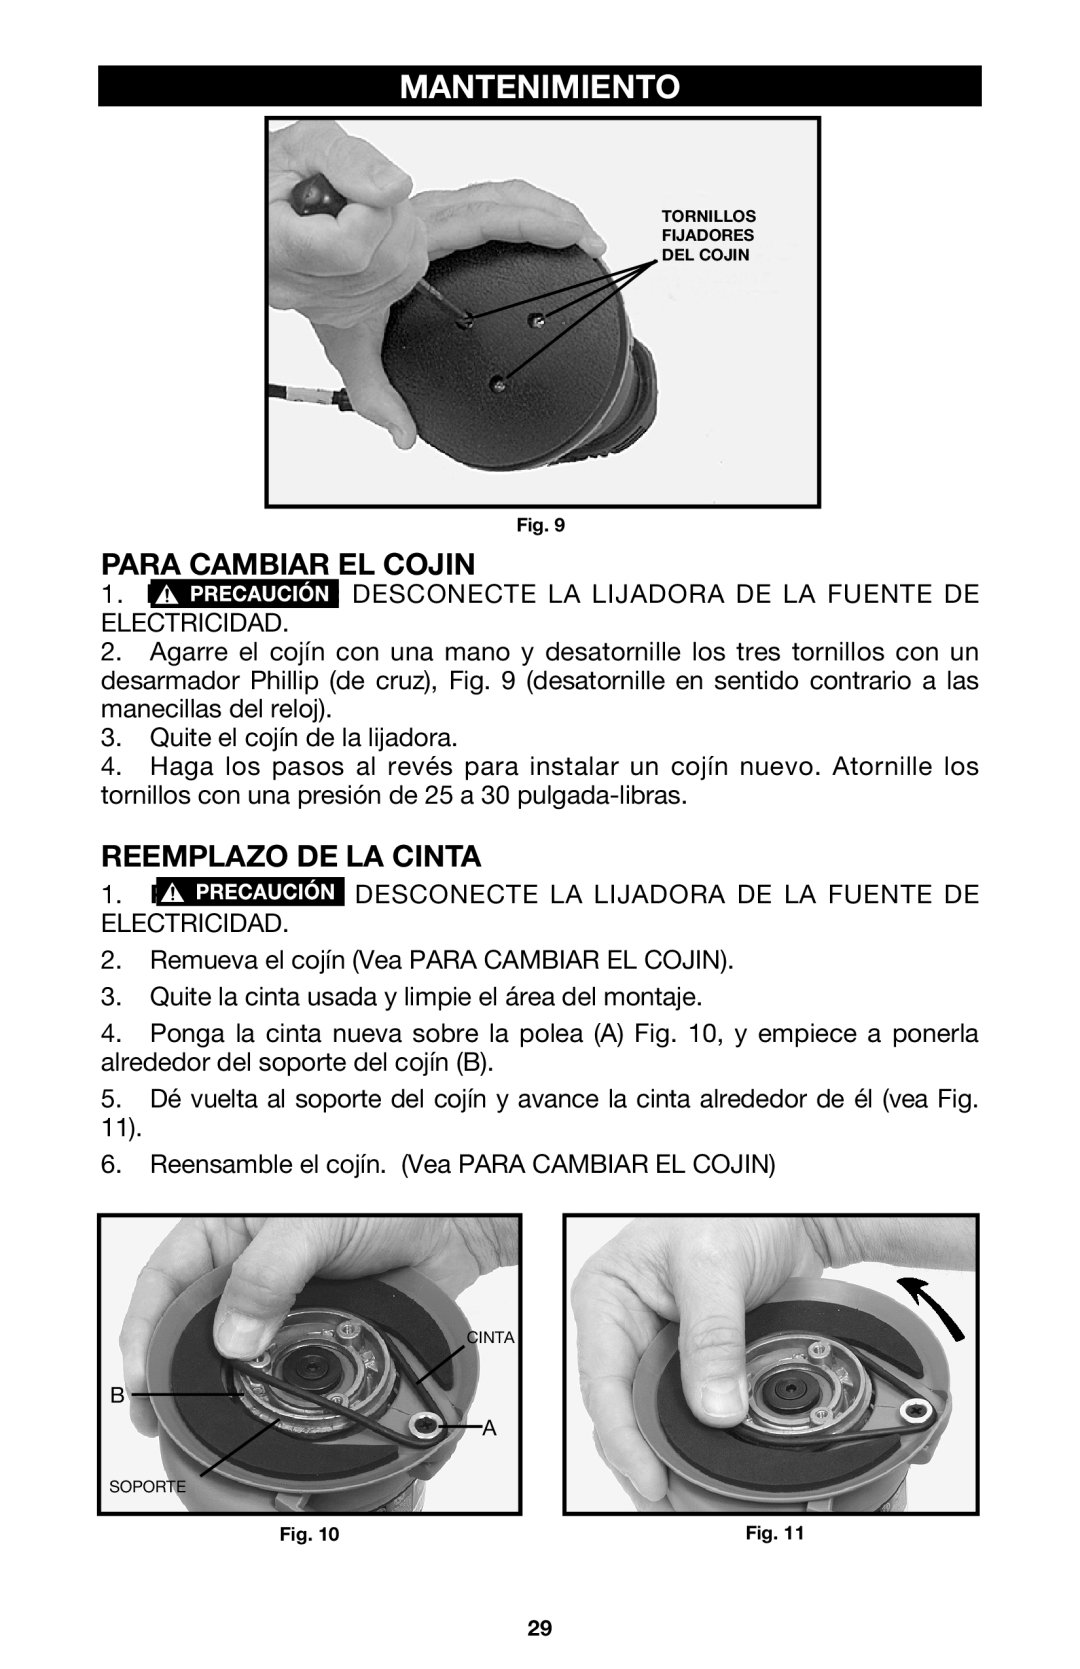 Porter-Cable 333VS instruction manual Mantenimiento, Para Cambiar El Cojin, Reemplazo De La Cinta 